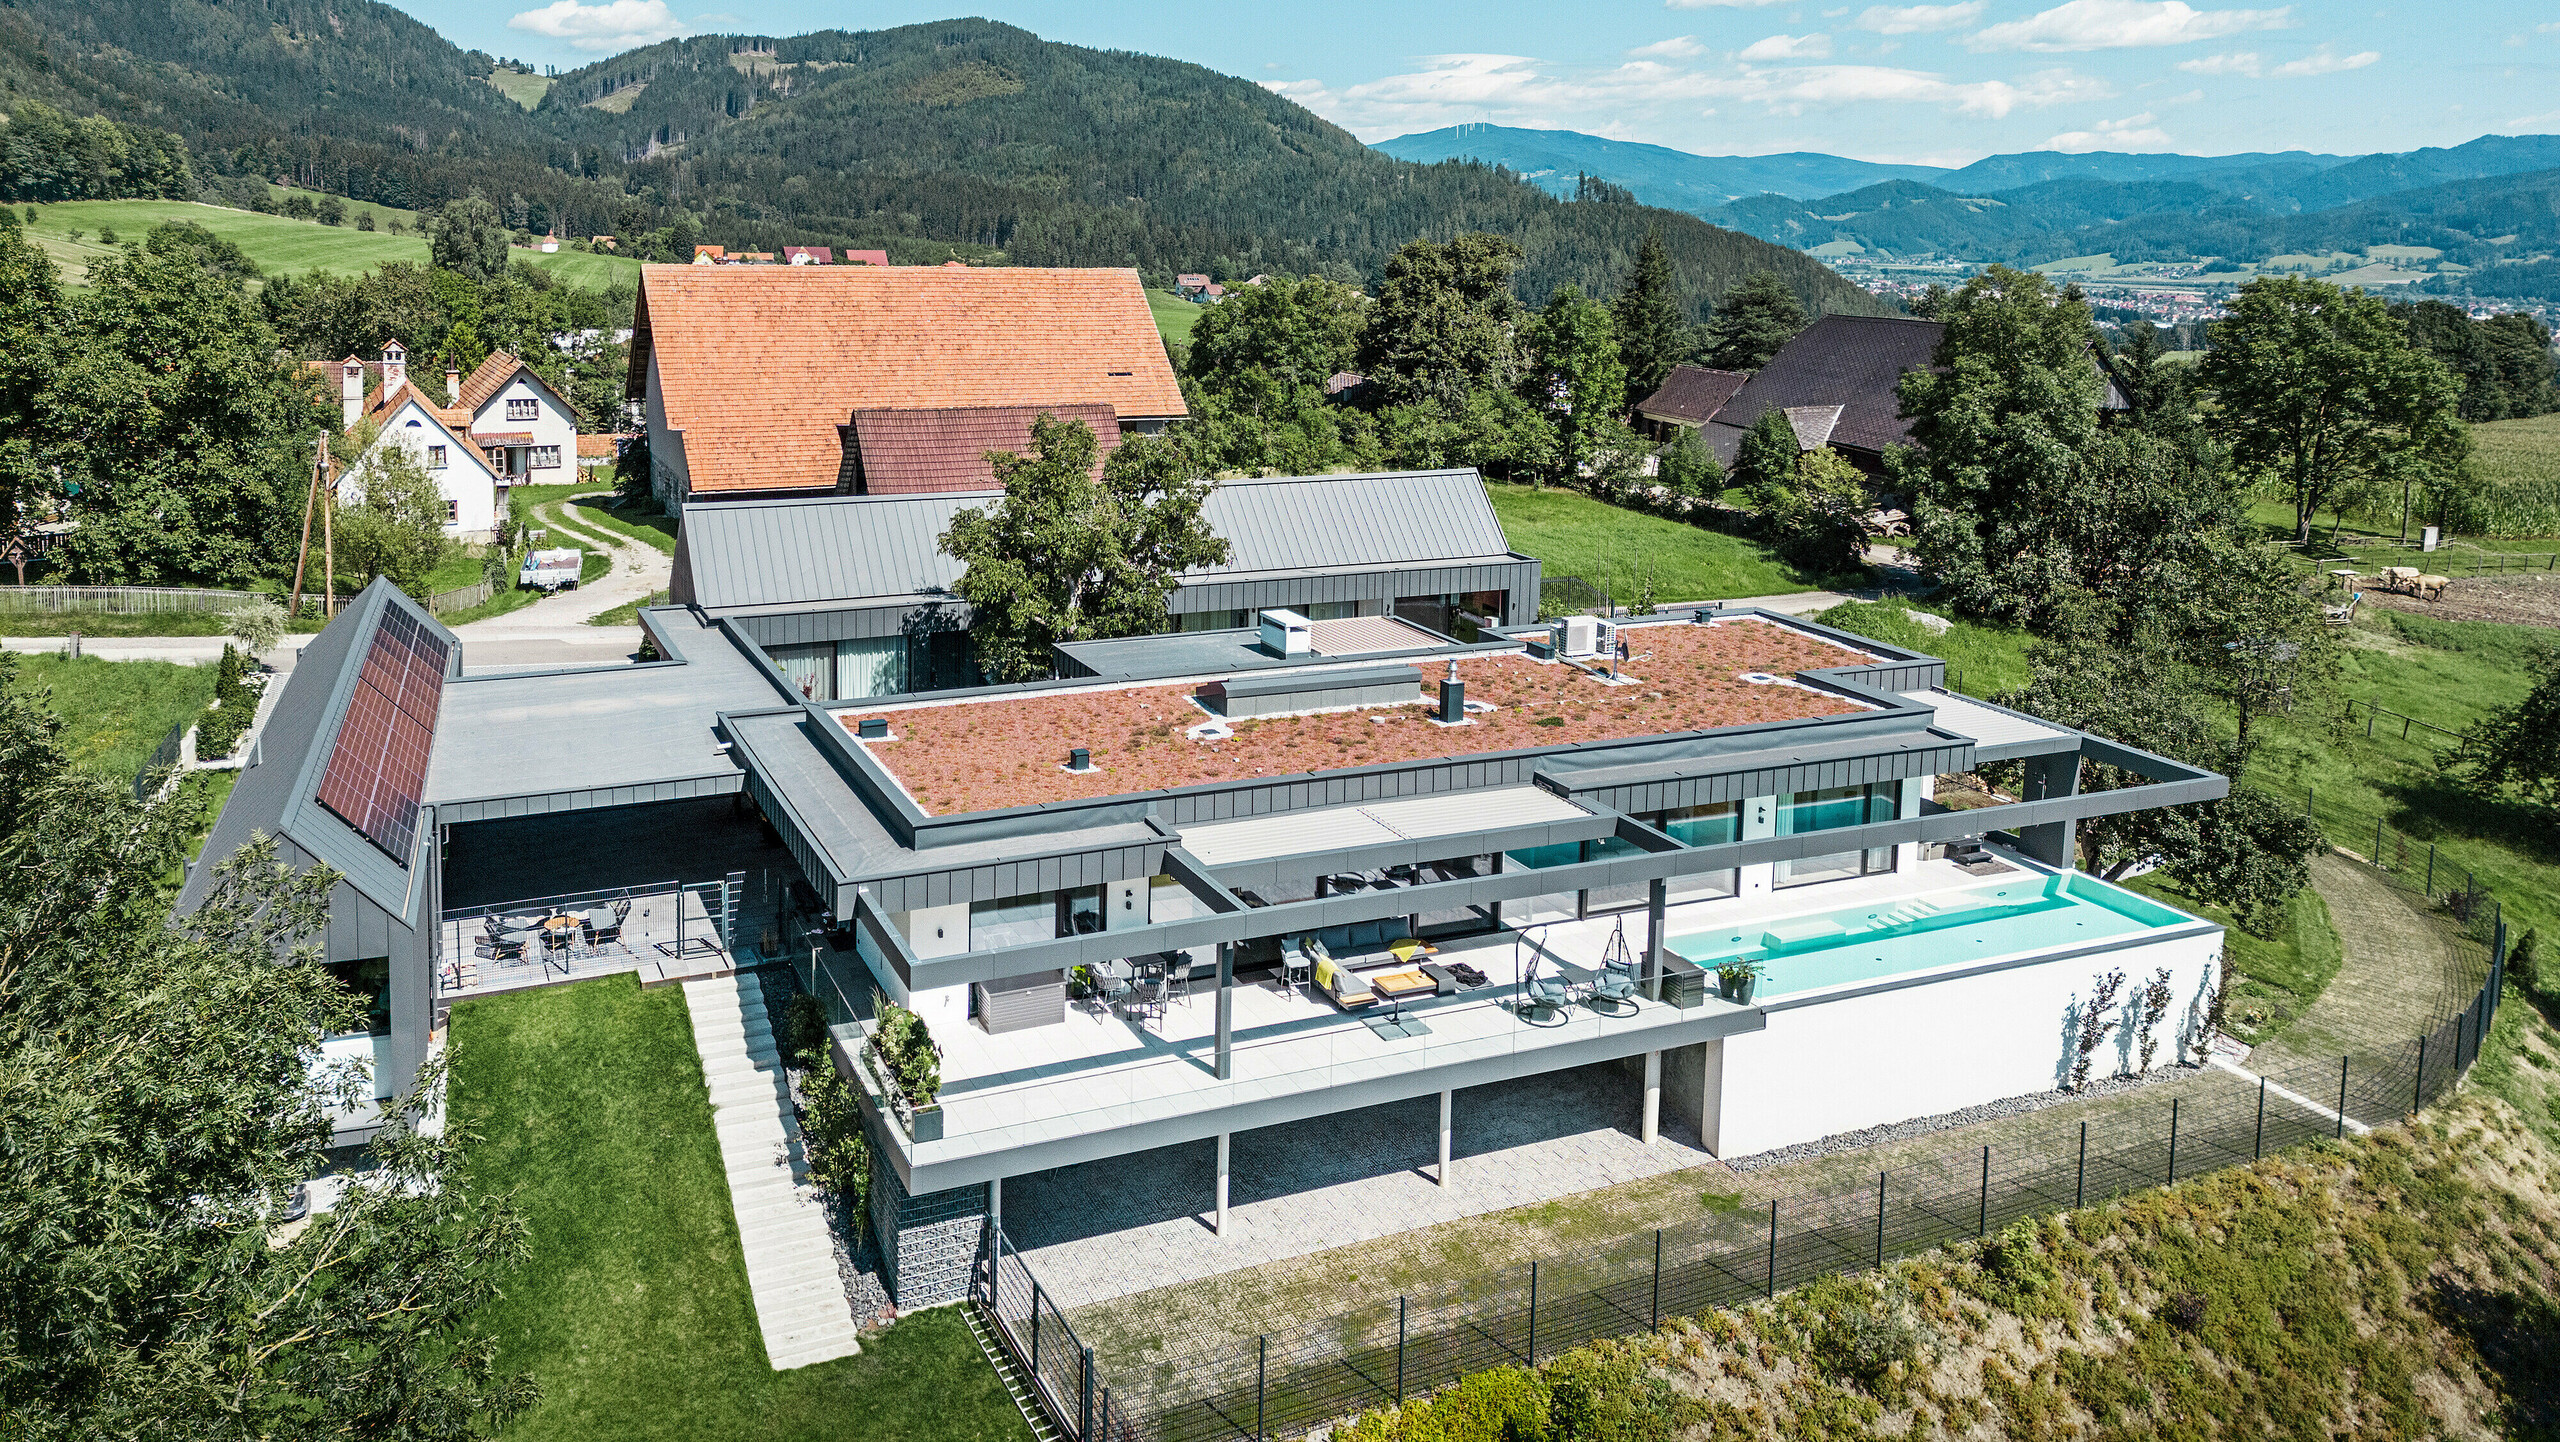 Záber z dronu na pôsobivý rodinný dom s časťami budovy využívanými na poľnohospodárske účely, terasou a bazénom v rakúskom Pogieri. Tmavosivé budovy sú orámované úchvatnou horskou krajinou. Nehnuteľnosť sa prezentuje strešným a fasádnym obkladom PREFALZ v tmavošedej farbe P.10, ktorý podčiarkuje jasné, moderné línie. Terasa a bazén ponúkajú luxusný vonkajší obývací priestor s panoramatickým výhľadom na okolitú krajinu. Spojenie moderných stavebných prvkov z PREFA a idylického miesta vytvára dokonalú symbiózu súčasného dizajnu a prírodných krás.